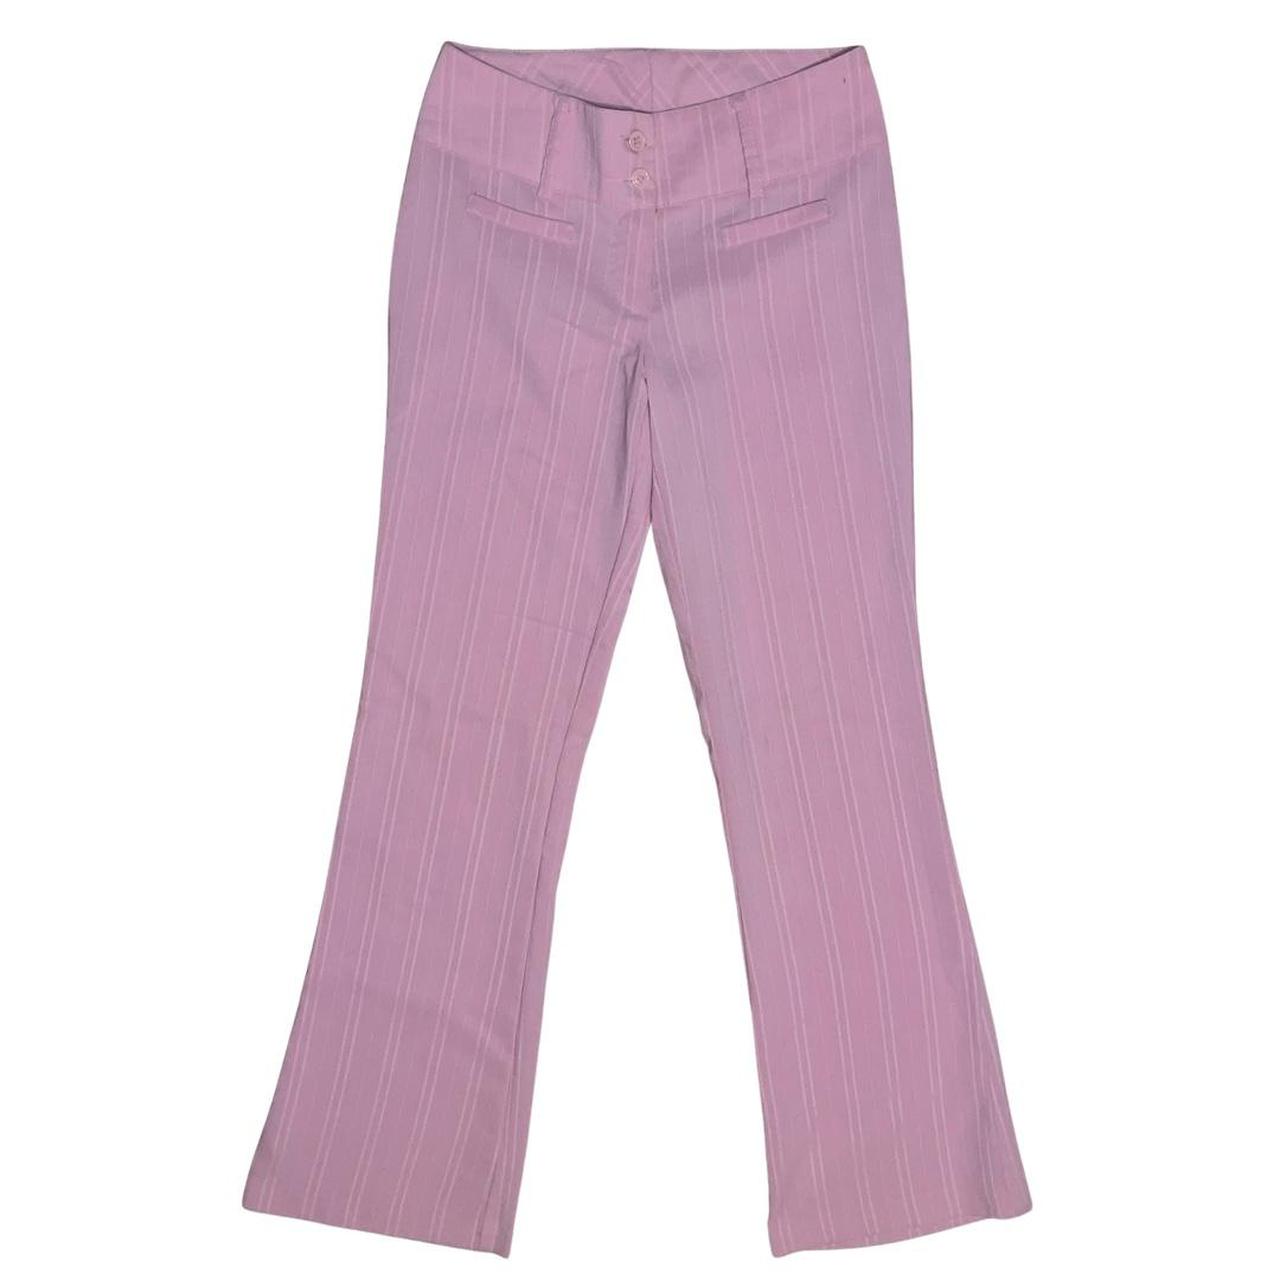 Lipsy Women's Pink Trousers | Depop